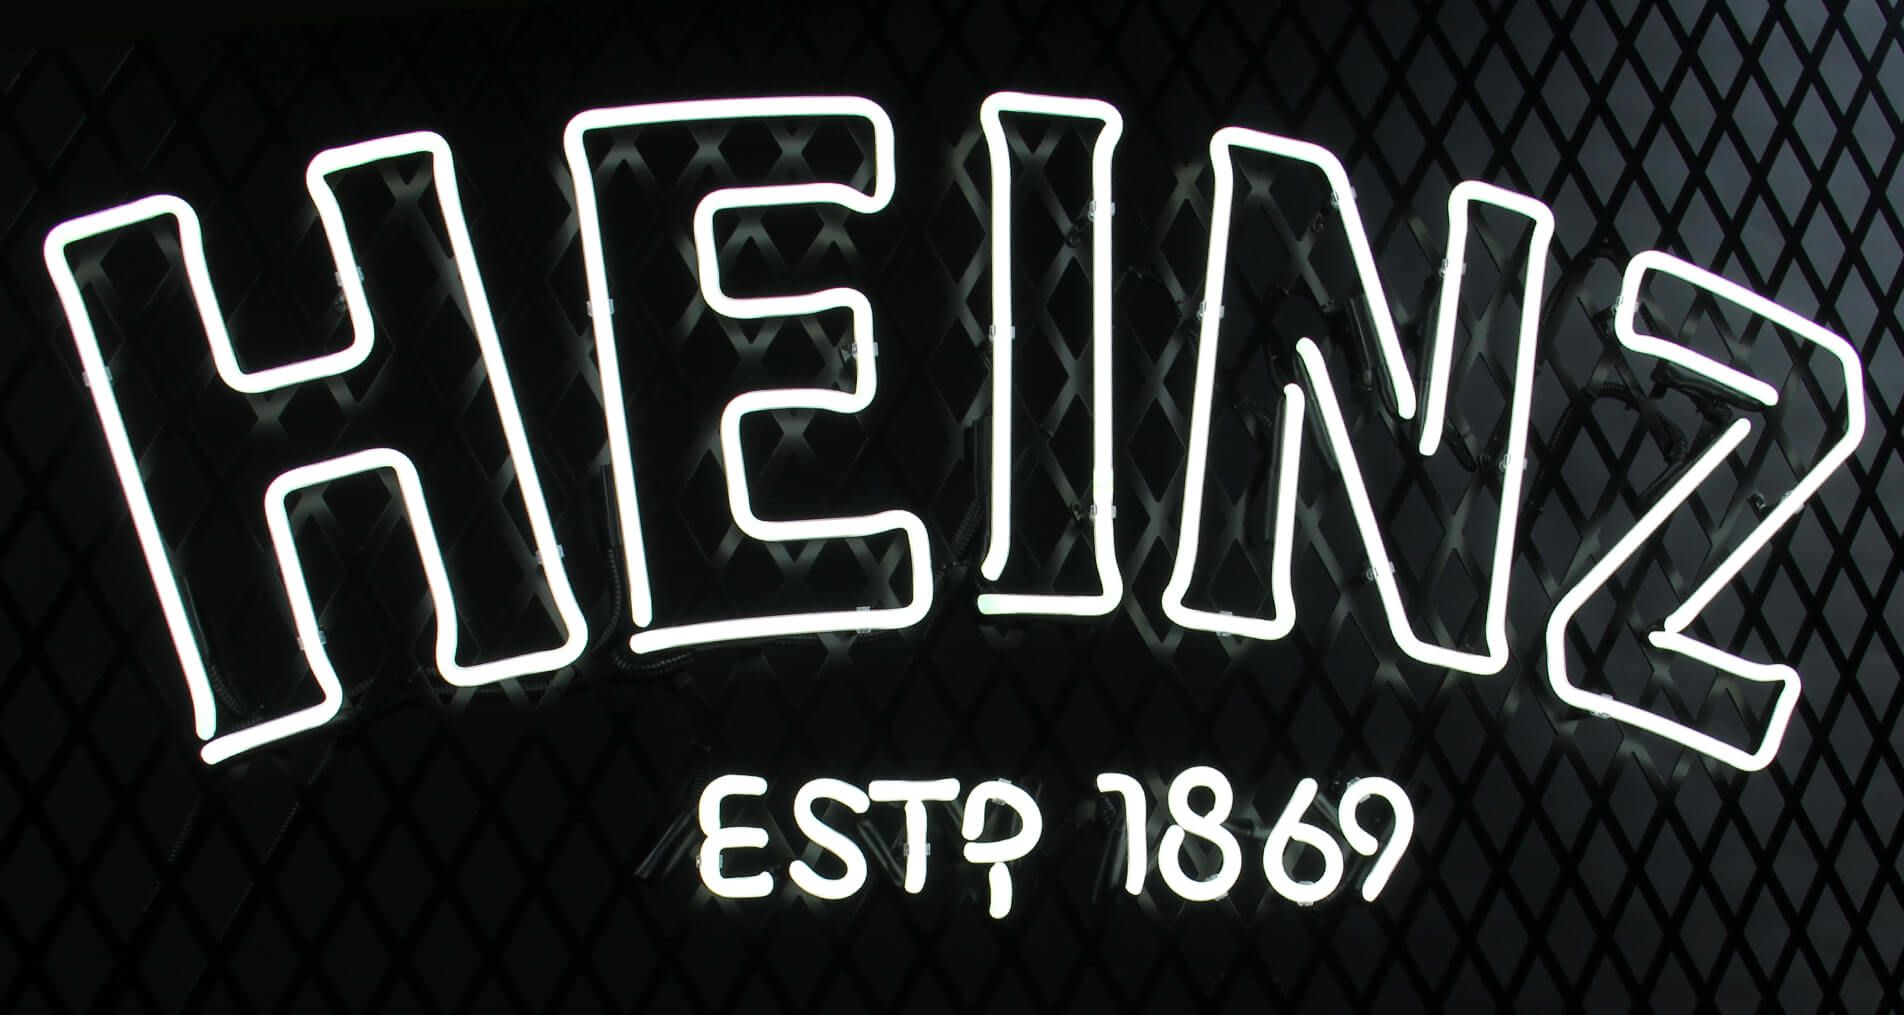 Heinz neon - Biały neon heinz 1896